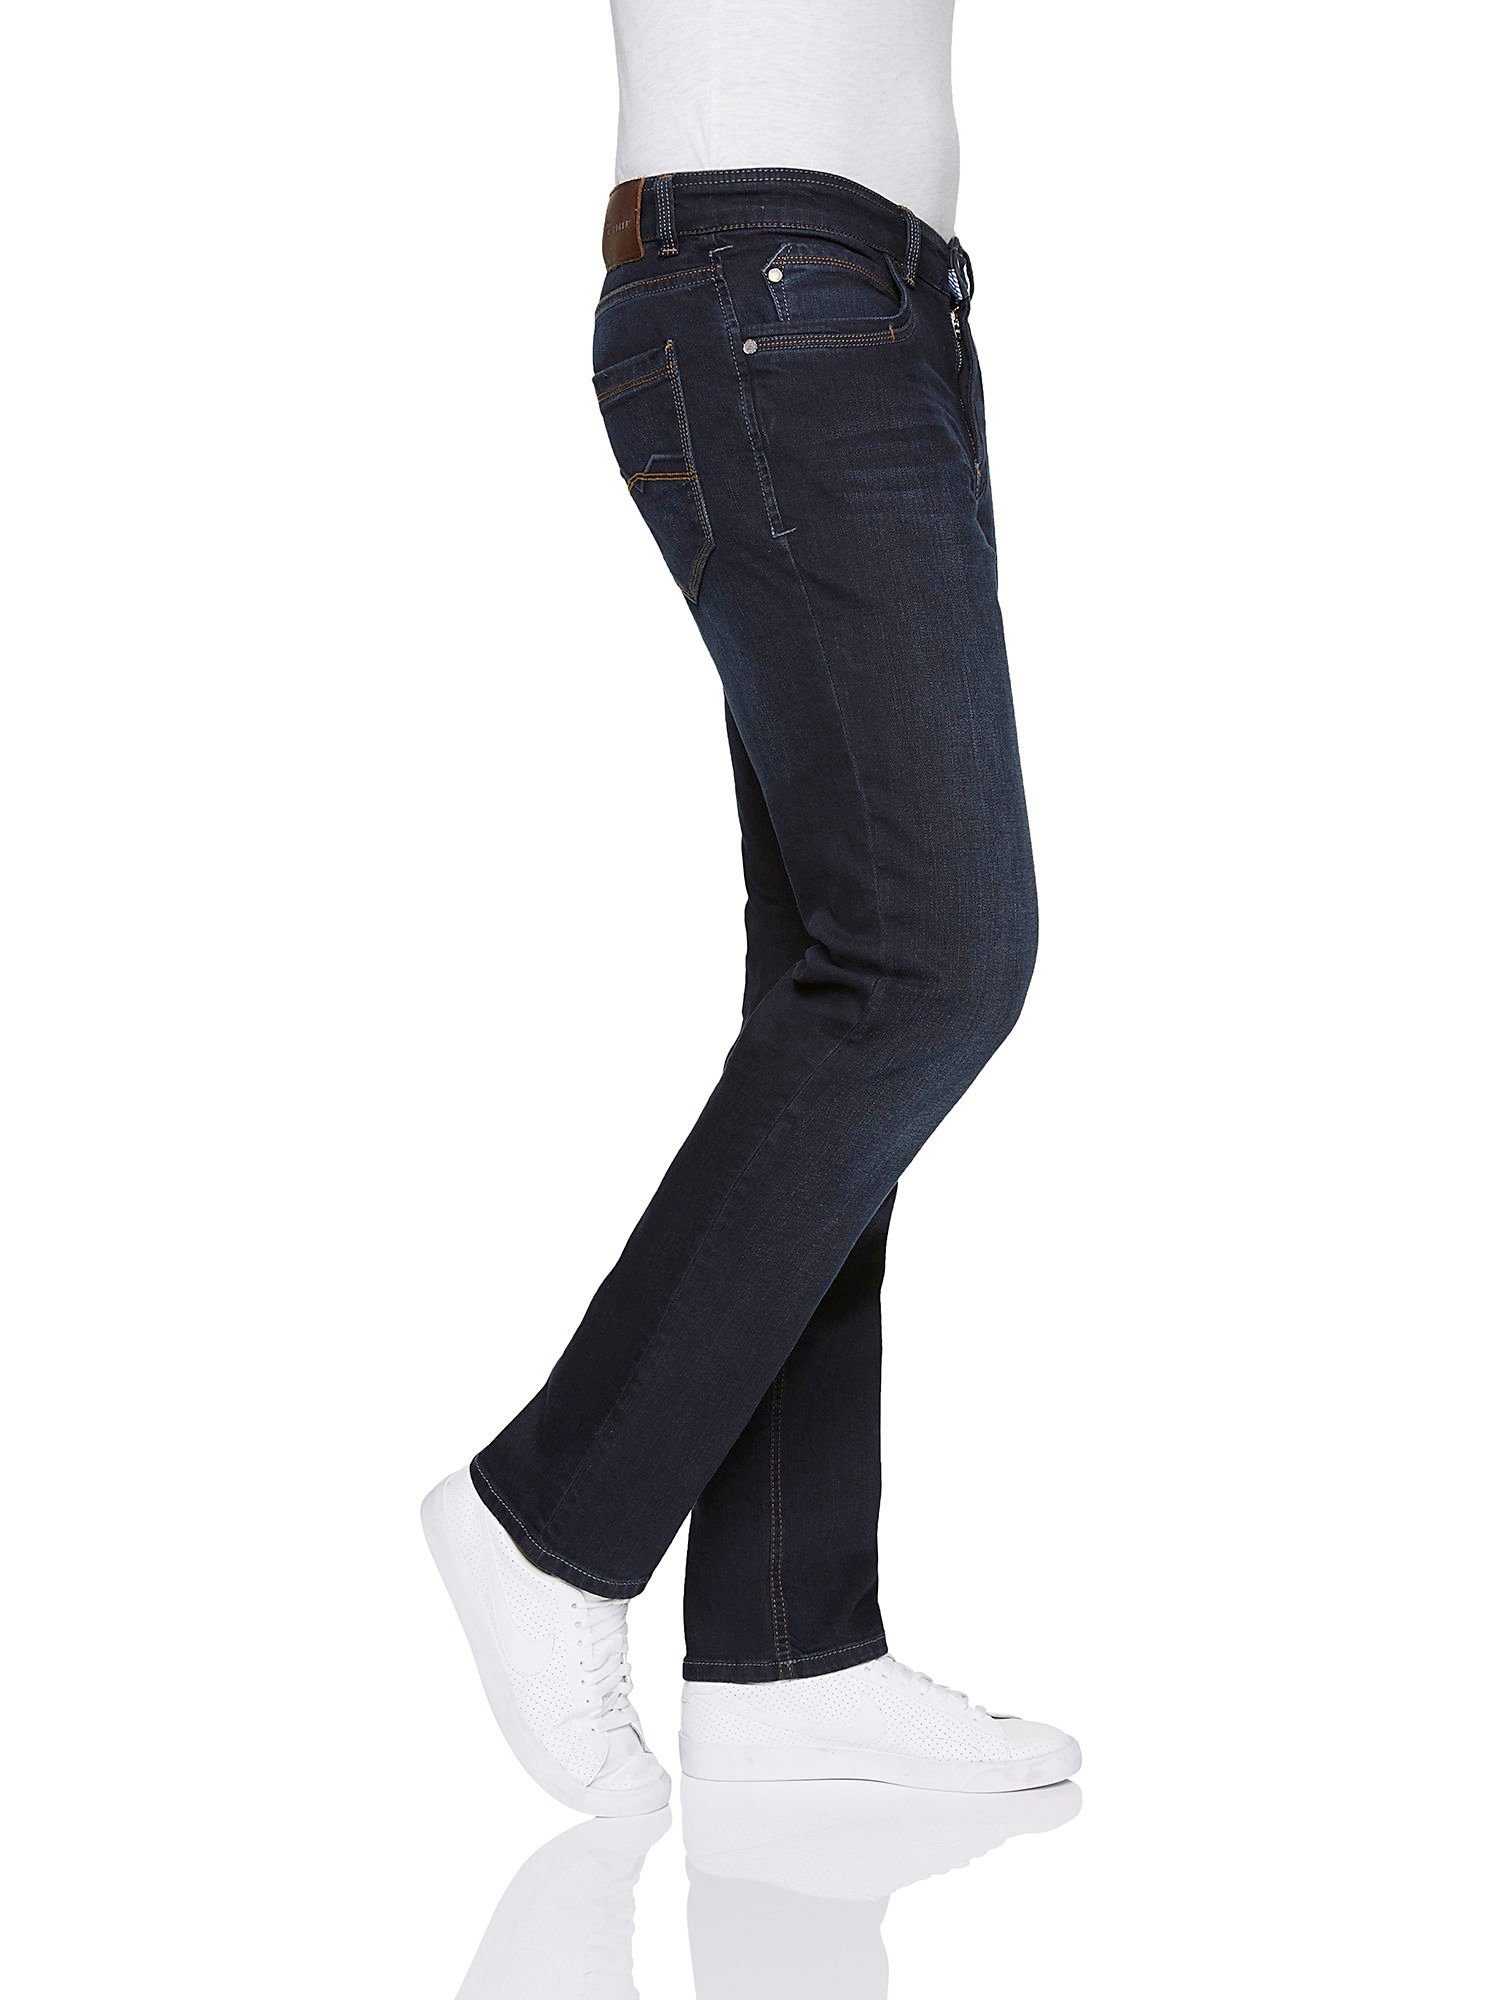 used GARDEUR 5-Pocket-Jeans 0-71001-169 blue GARDEUR ATELIER light - dark rinse Atelier SUPERFLEX BATU